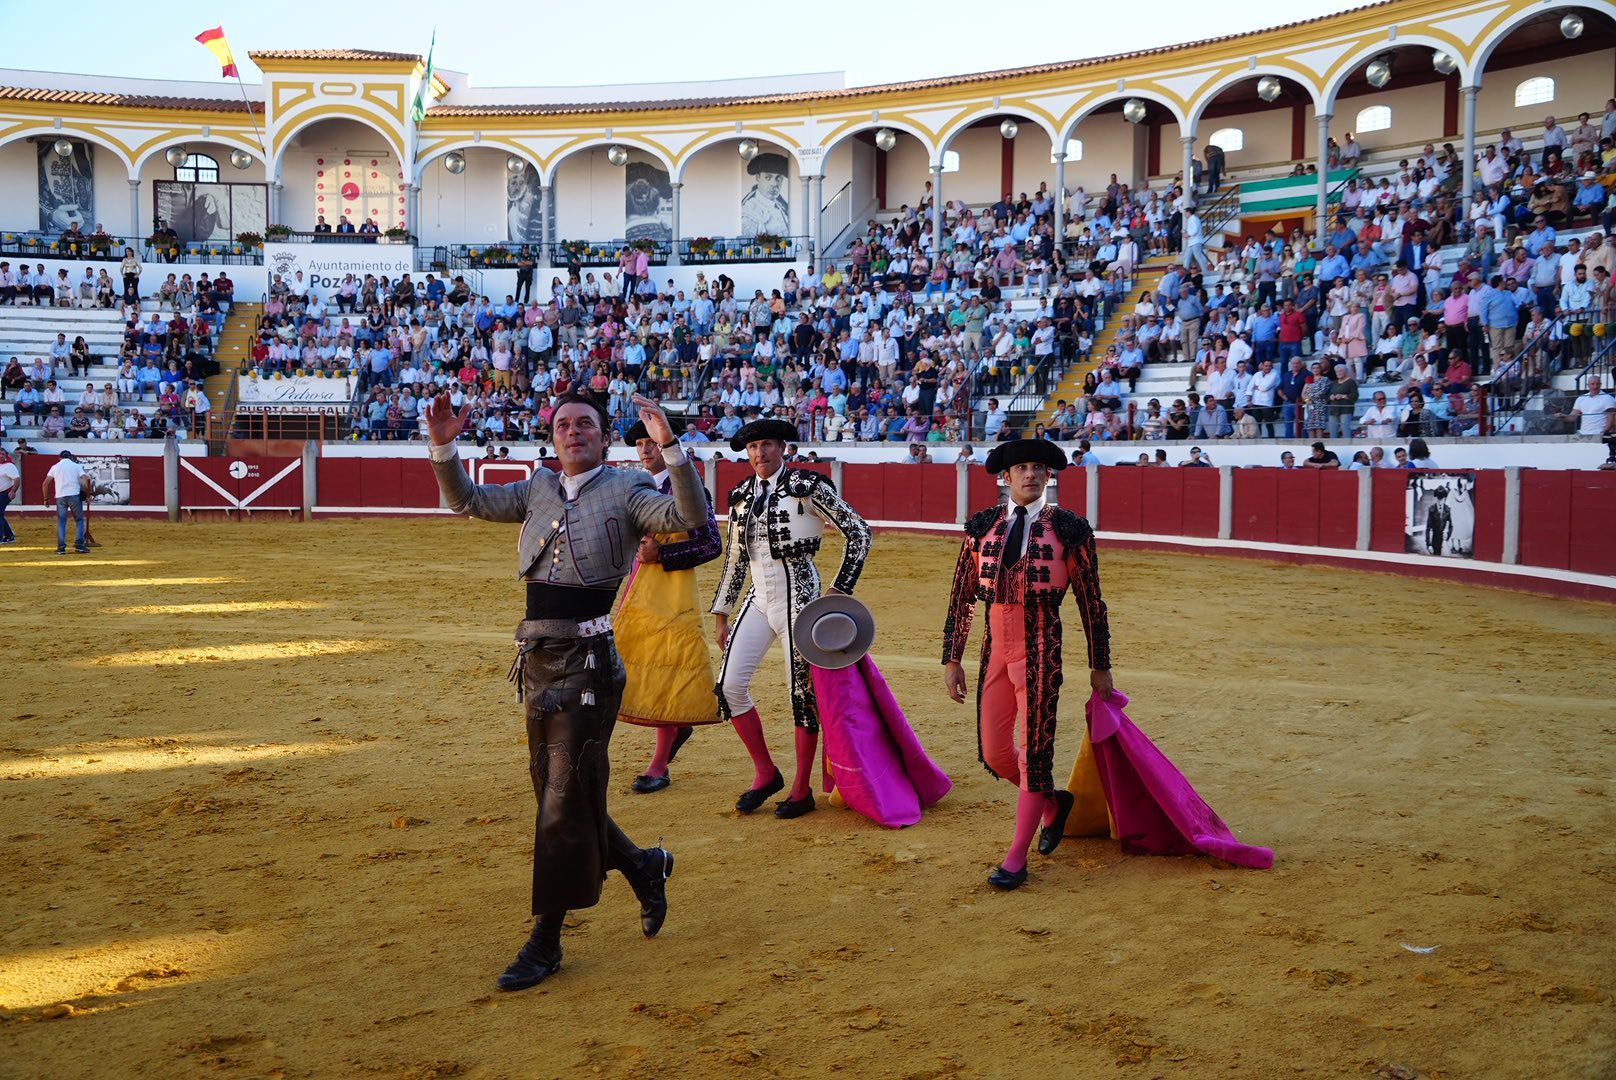 La corrida de rejones en Pozoblanco, en imágenes